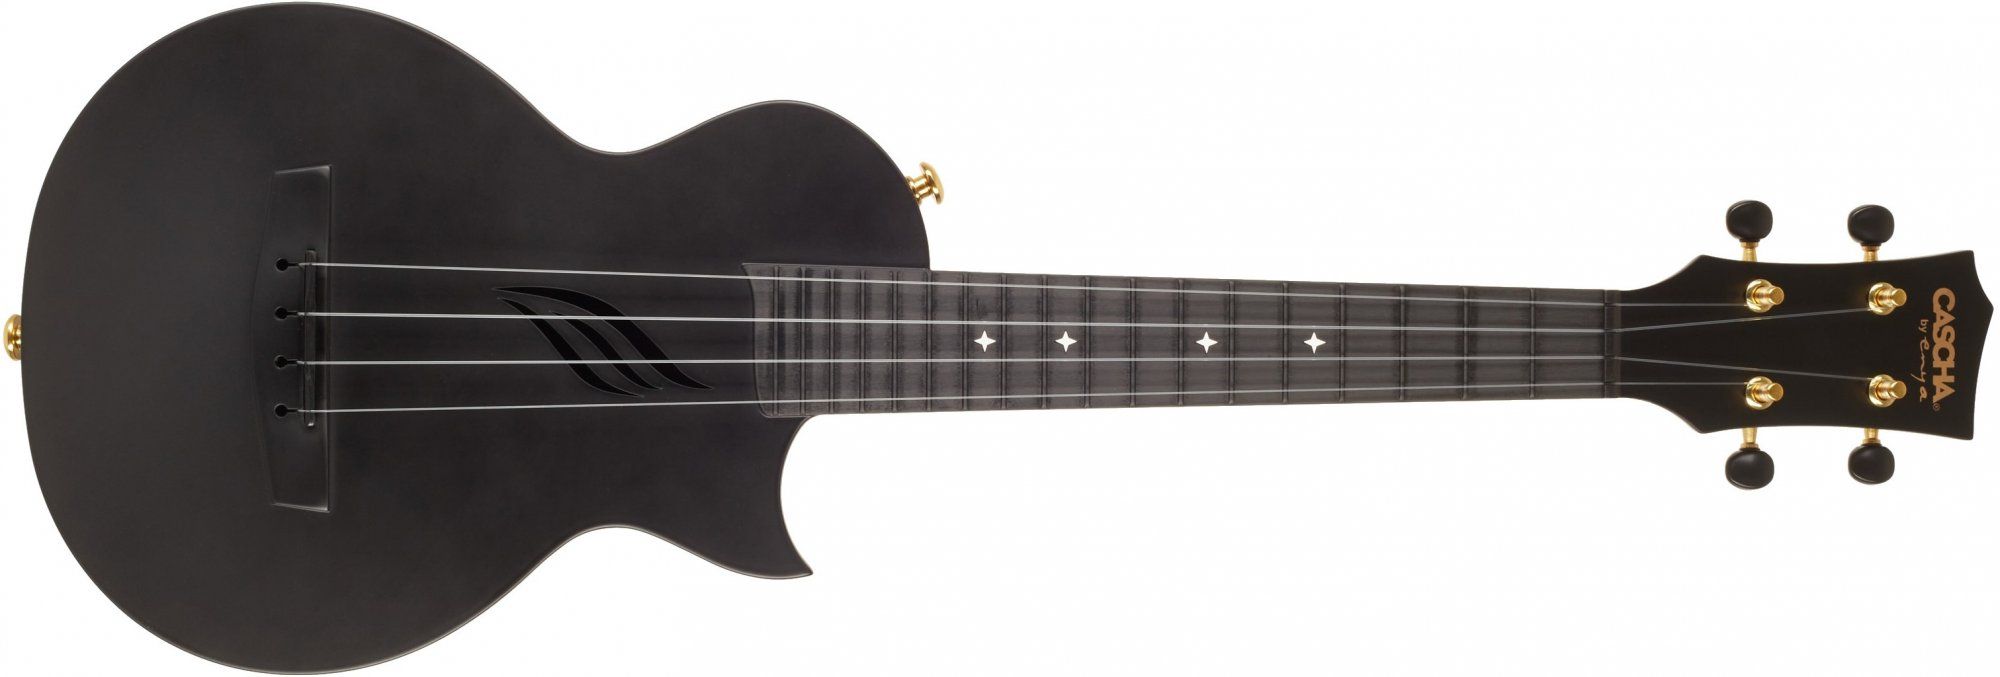  gyönyörű modern koncert ukulele Cascha HH 2258 Carbon Fibre Ukulele Set Black, fekete matt 18 bundos teljes hangzás műanyagból készült gazdag felszereltség gyönyörű ajándékként is gyönyörű 